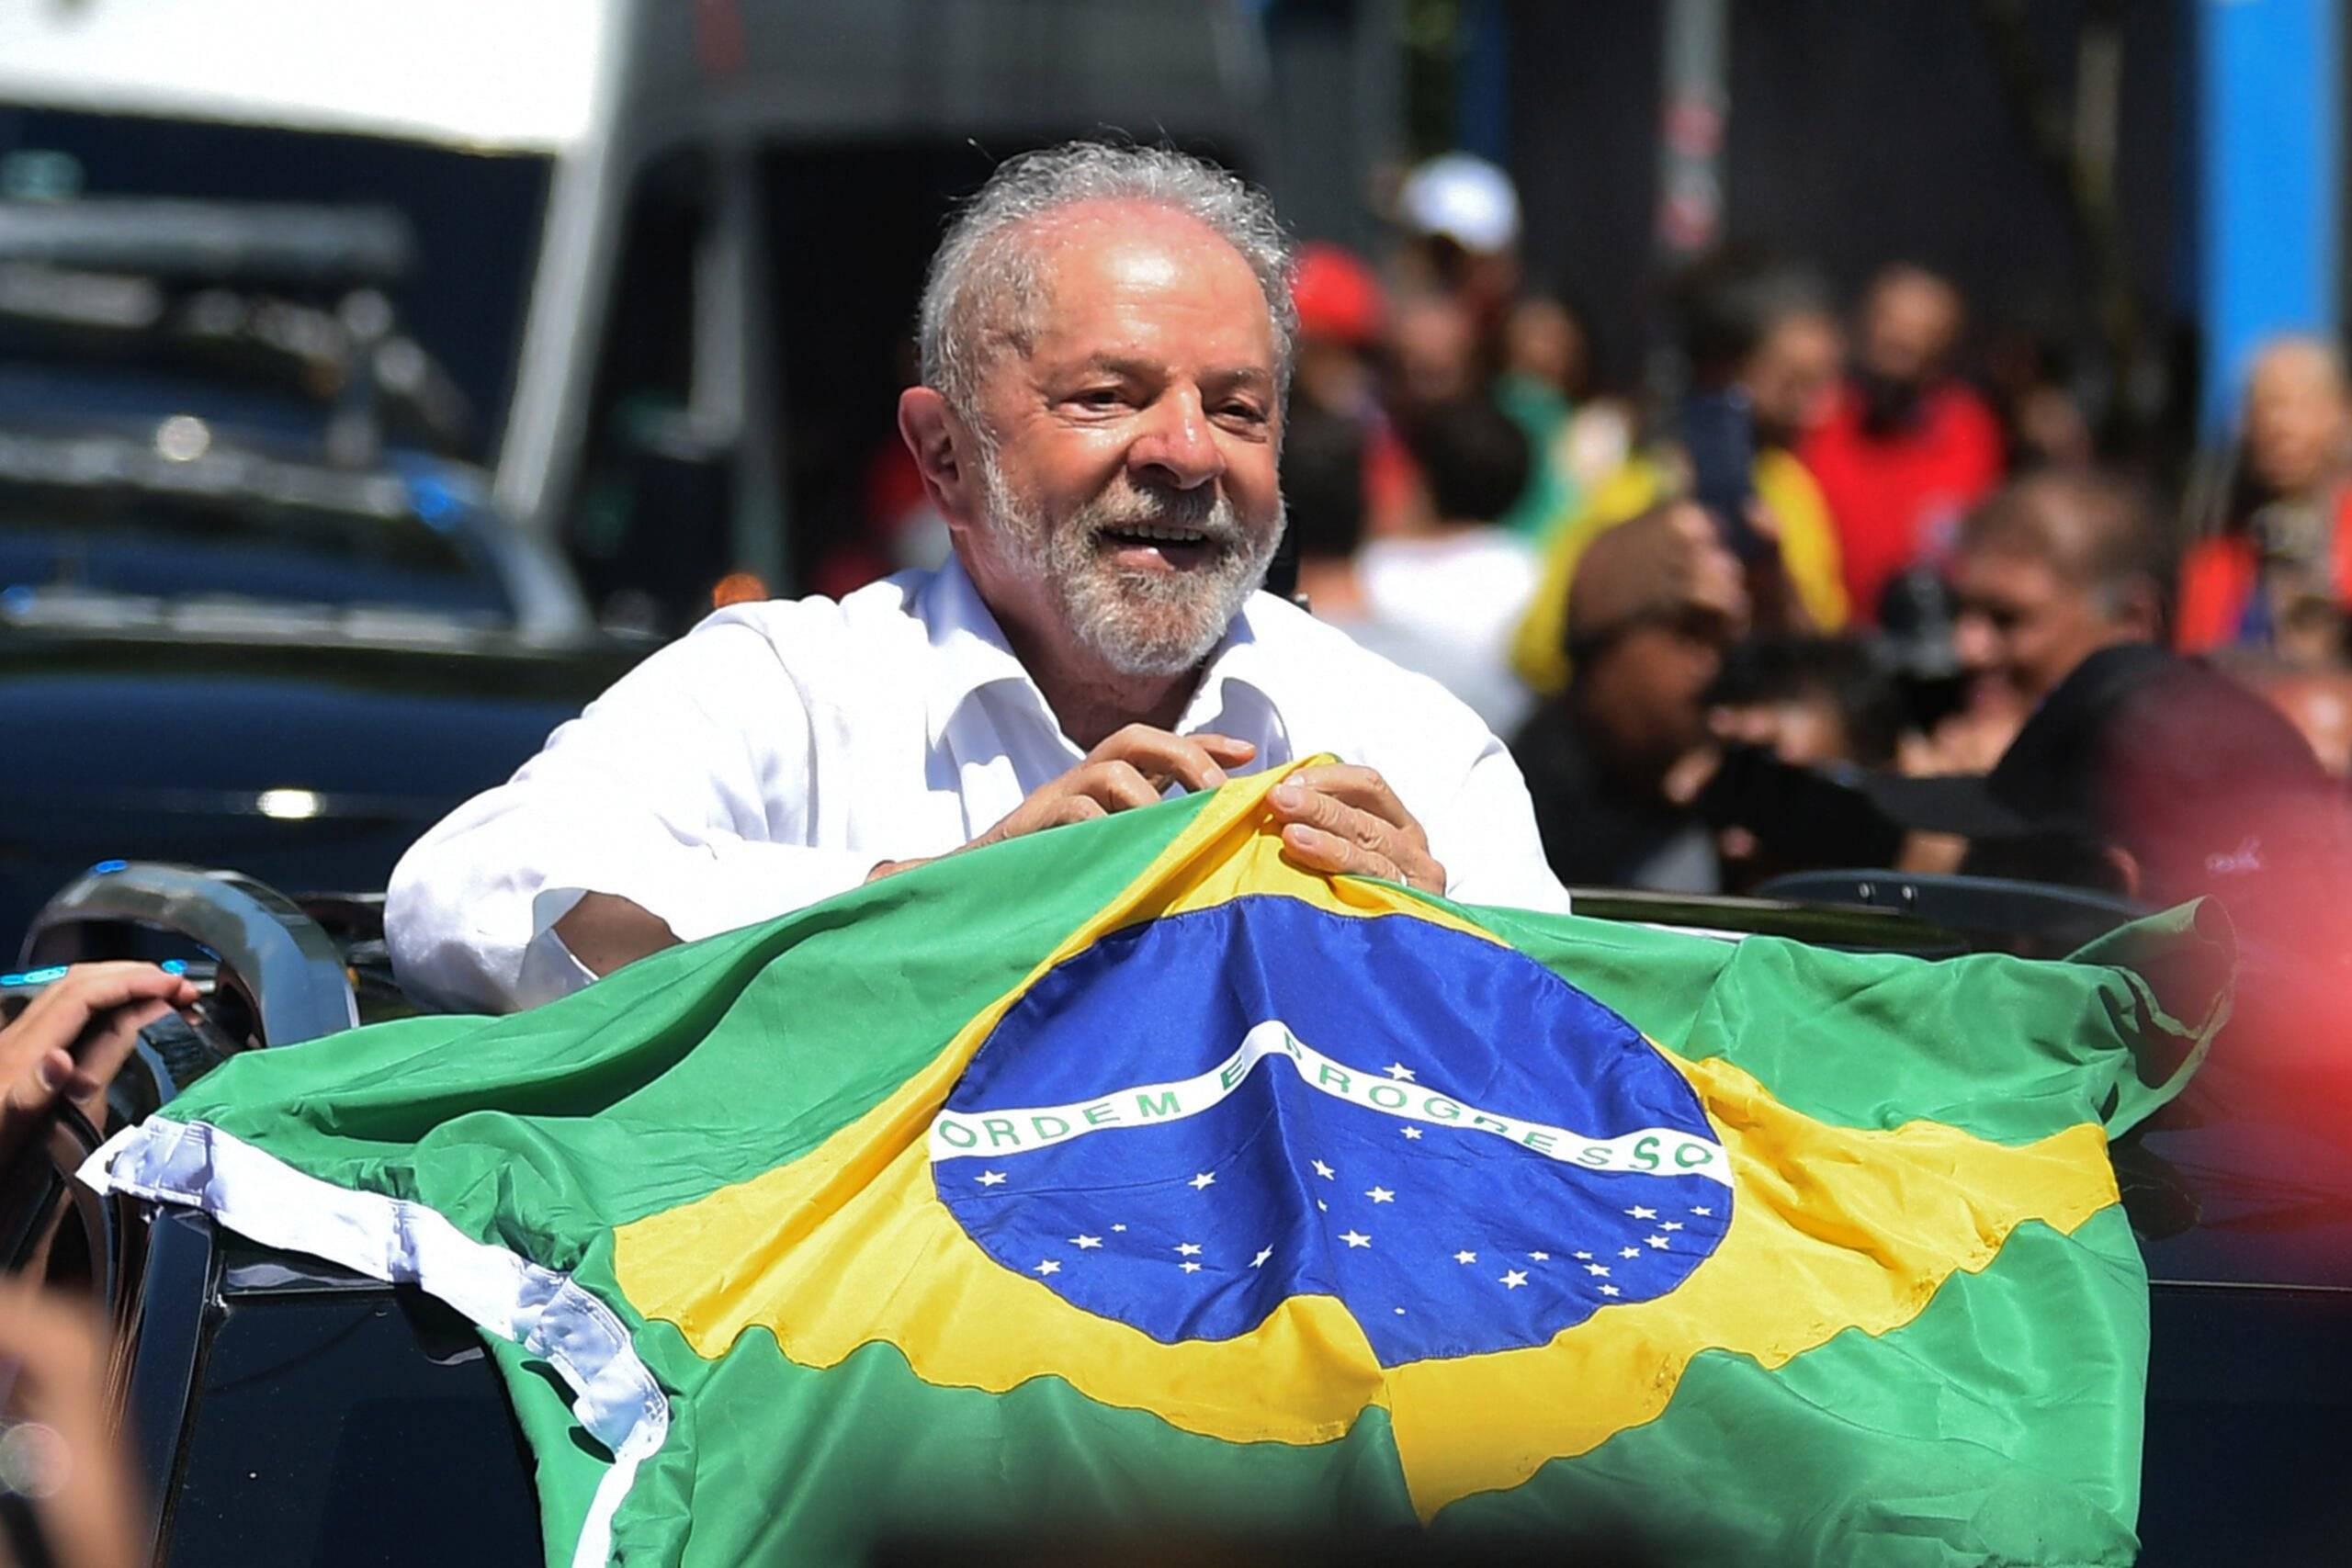 Były prezydent Brazylii (2003-2010) i kandydat lewicowej Partii Pracujących (PT) Luiz Inacio Lula da Silva trzyma brazylijską flagę wychodząc z lokalu wyborczego podczas rundy prezydenckiej w Sao Paulo, Brazylia, 30 października 2022 r.